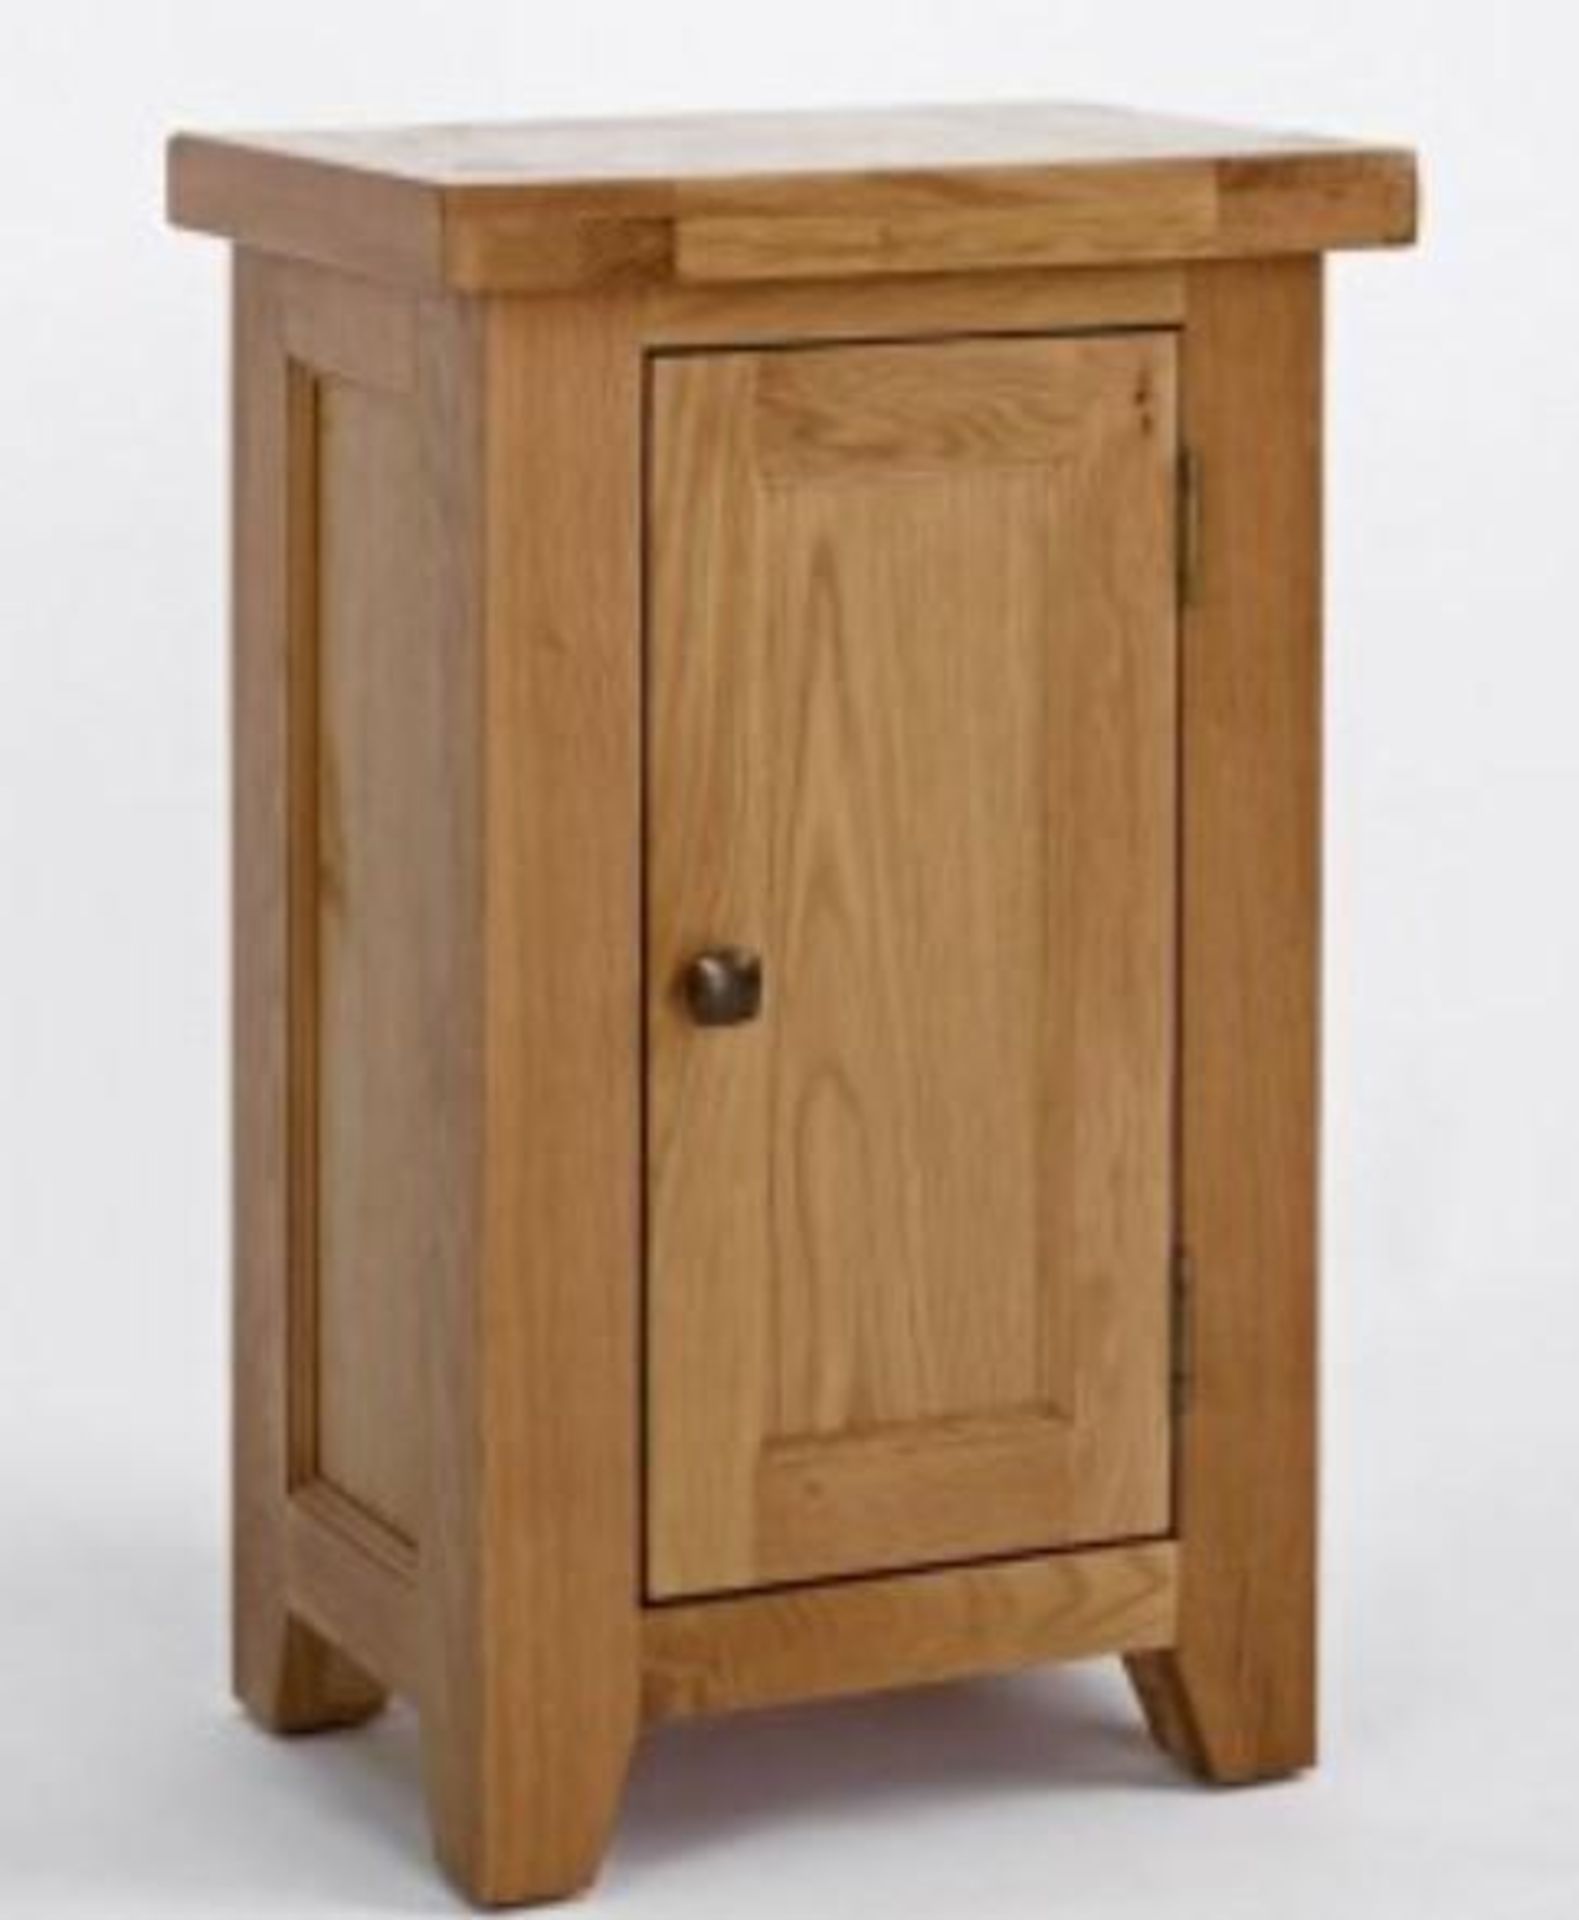 BRAND NEW & BOXED Devon oak small cabinet